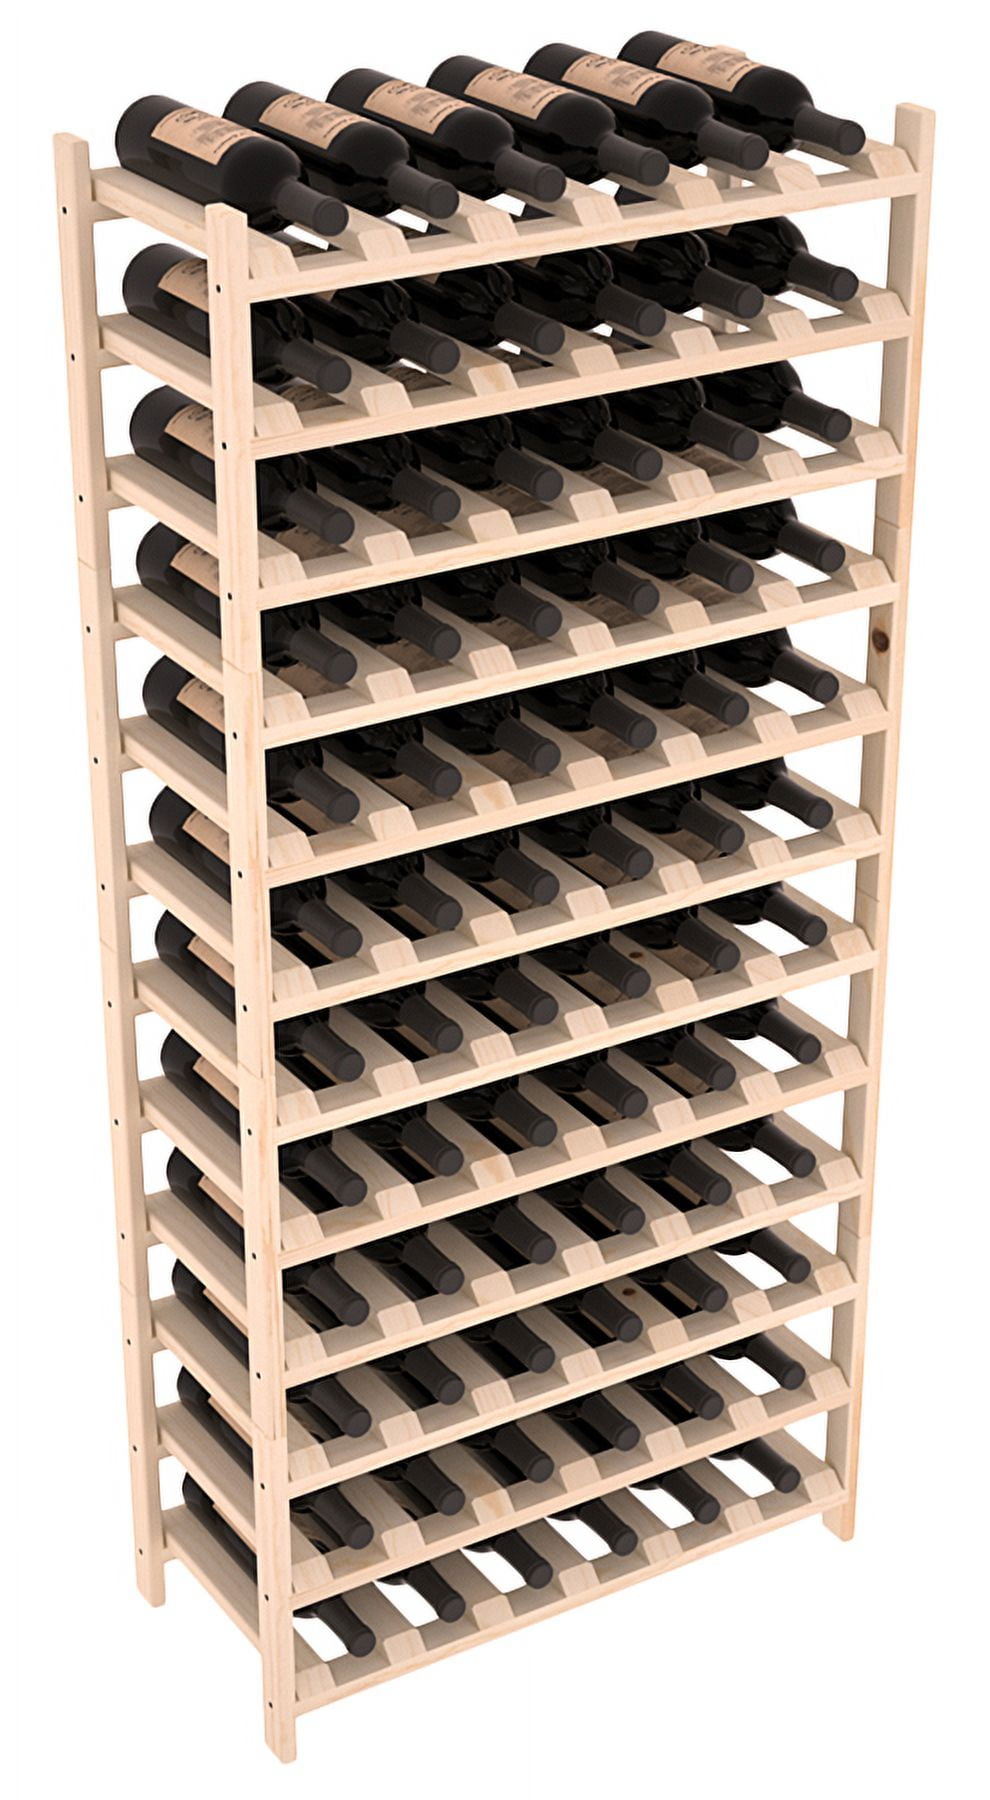 Bottle rack, bottle holder refrigerator, bottle rack stackable, bottle rack  refrigerator, wine rack stackable, expandable water bottle organizer  10.6-16.5 for kitchen, refrigerator, cabinets